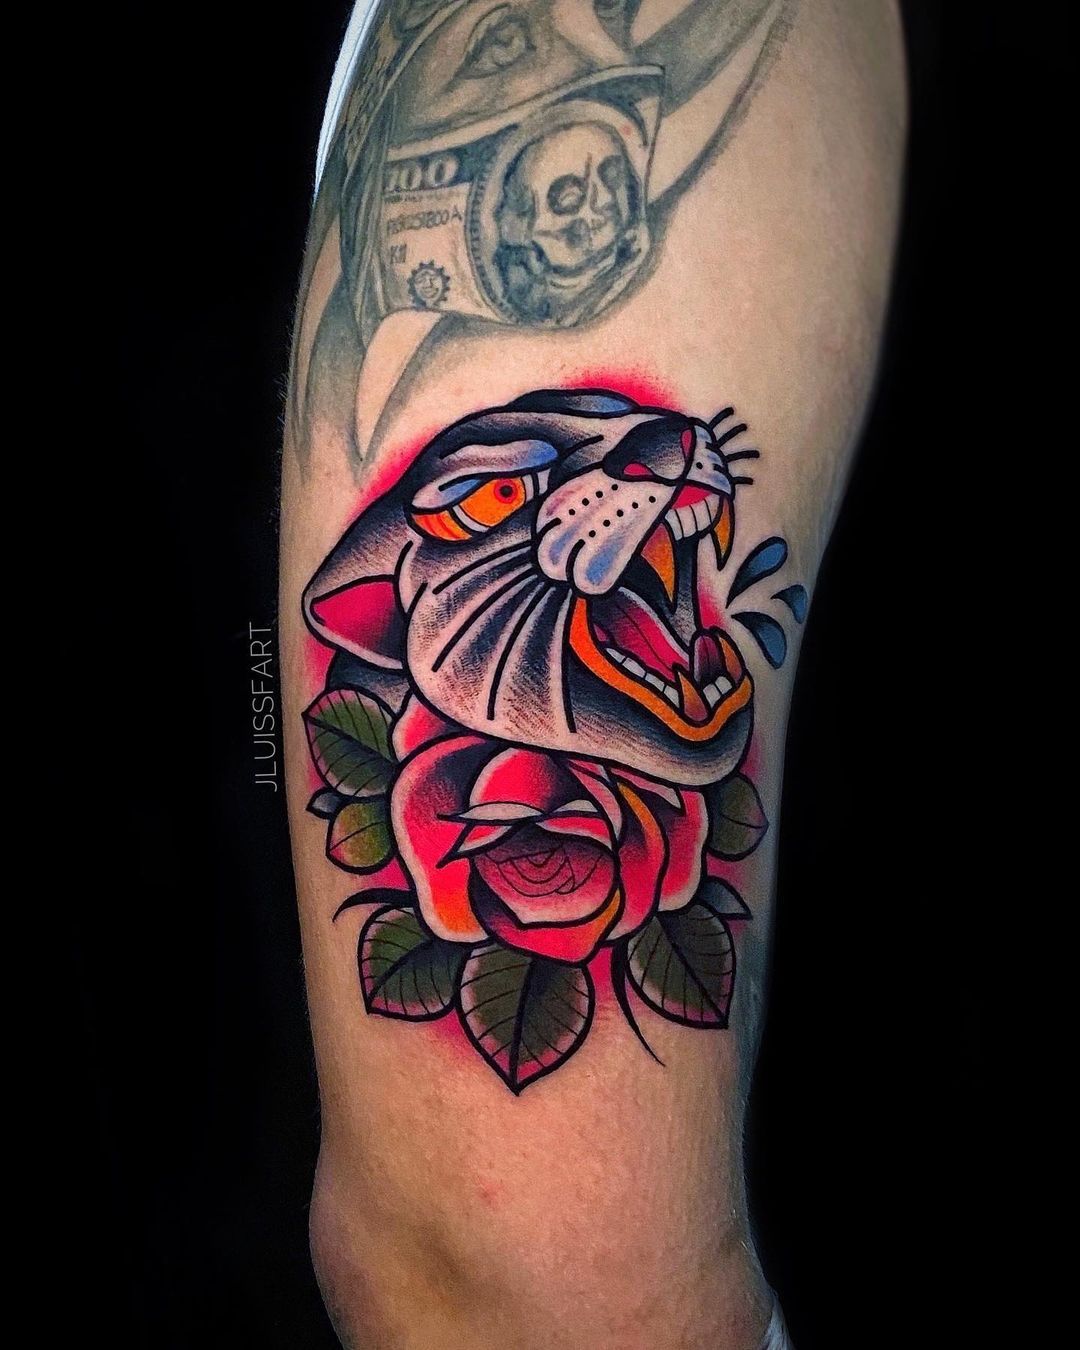 Panther Rose, Thomas Titus, Cutthroat Tattoo, Bigfork MT : r/tattoos